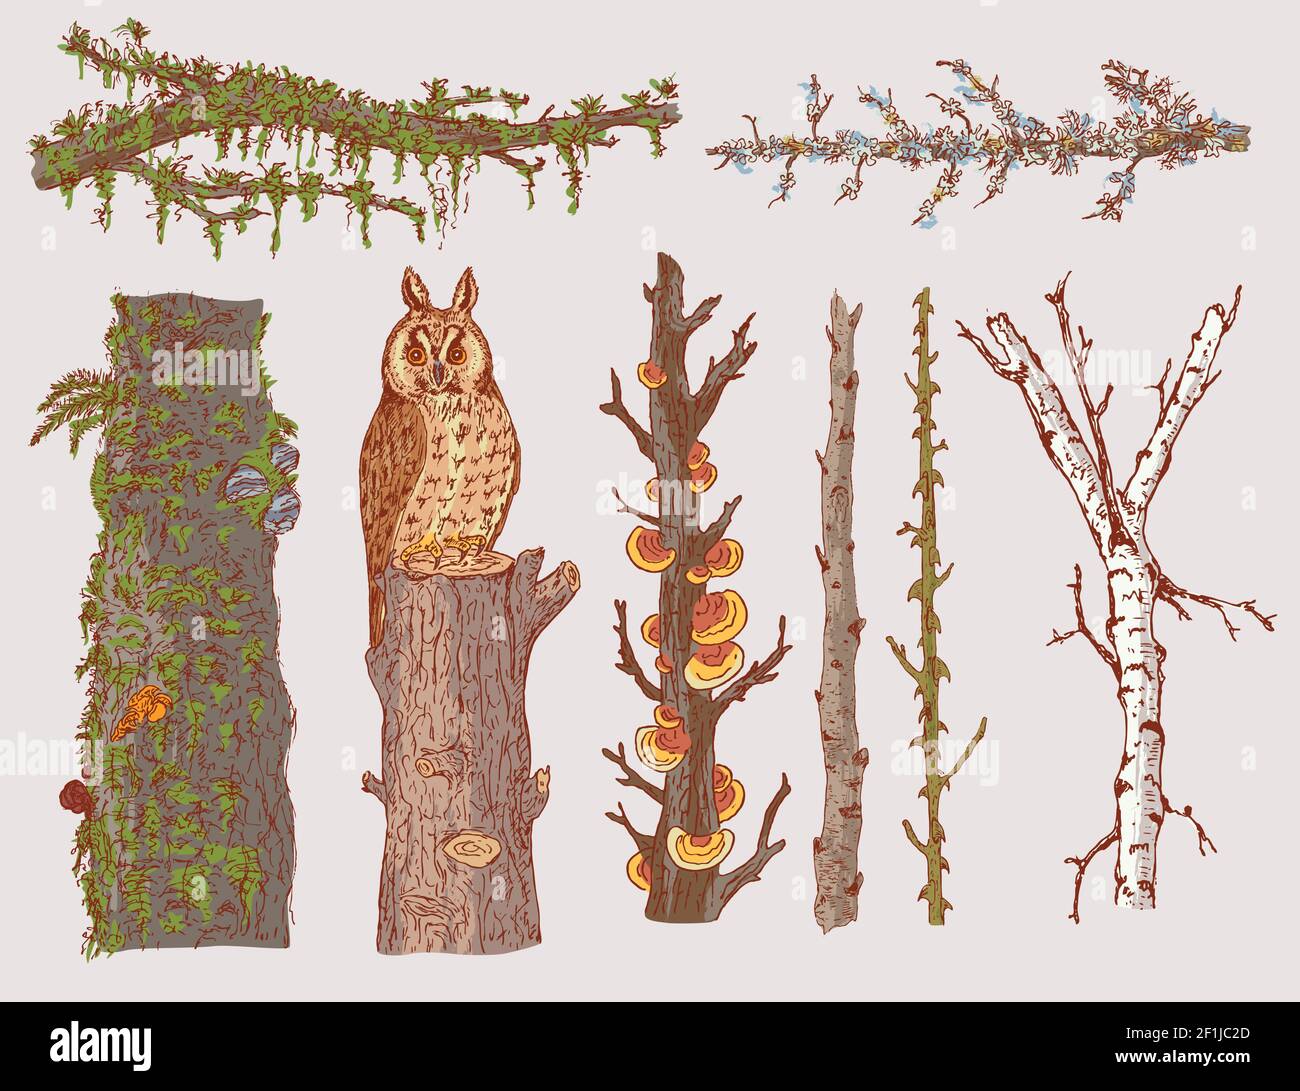 Handgezeichnete Waldbäume mit natürlichen Ästen Stämme und gesetzt Eule sitzt auf Stumpf isoliert Vektor-Illustration Stock Vektor